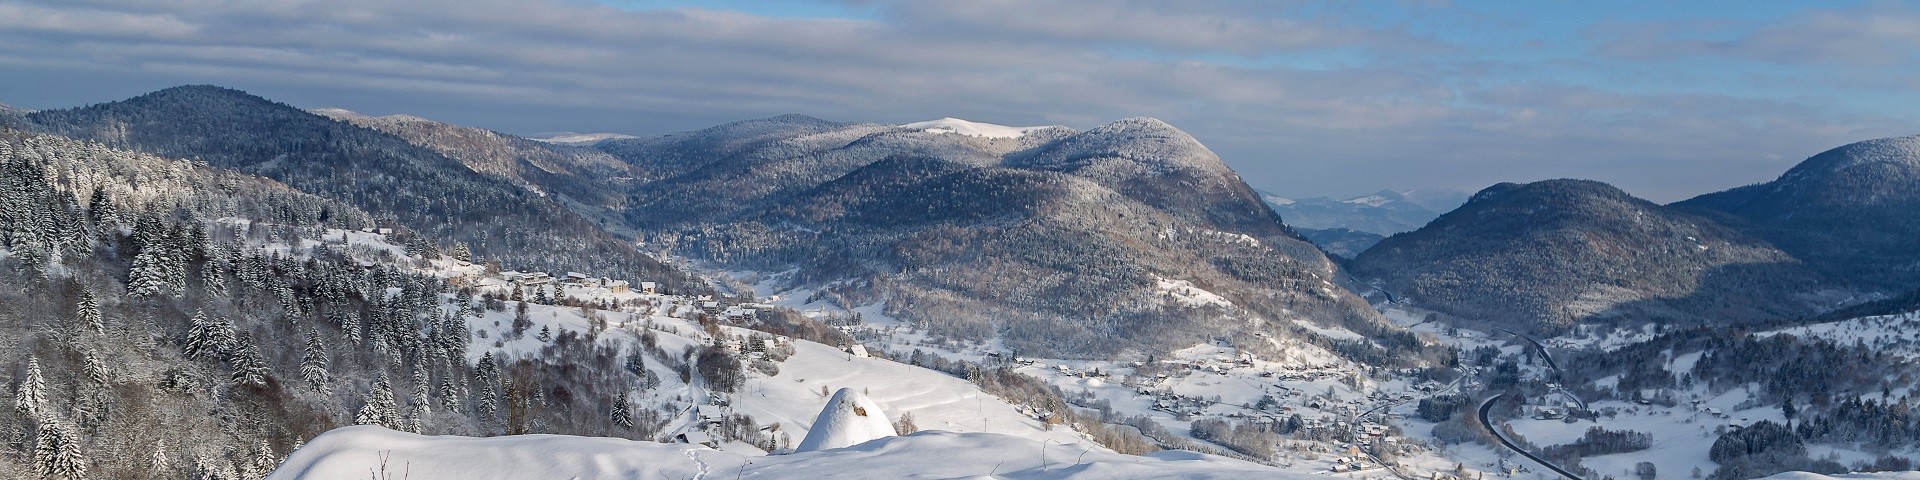 dominique-steinel-neige285-001-2-jpg-village-2131